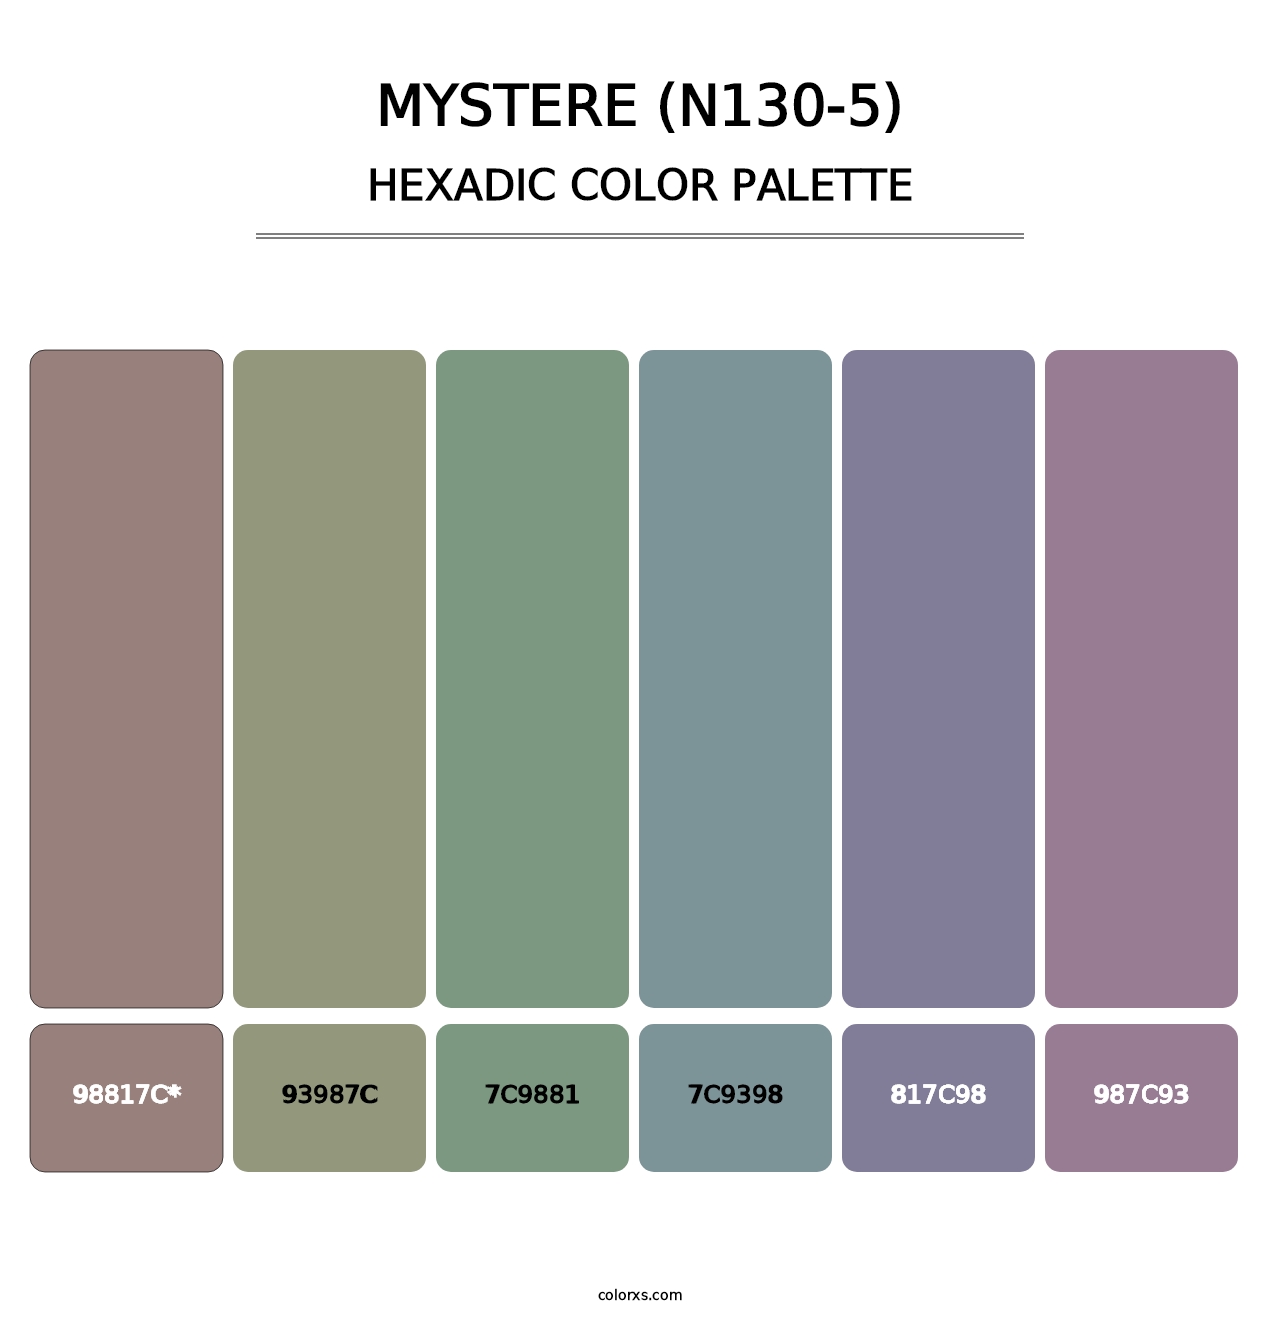 Mystere (N130-5) - Hexadic Color Palette